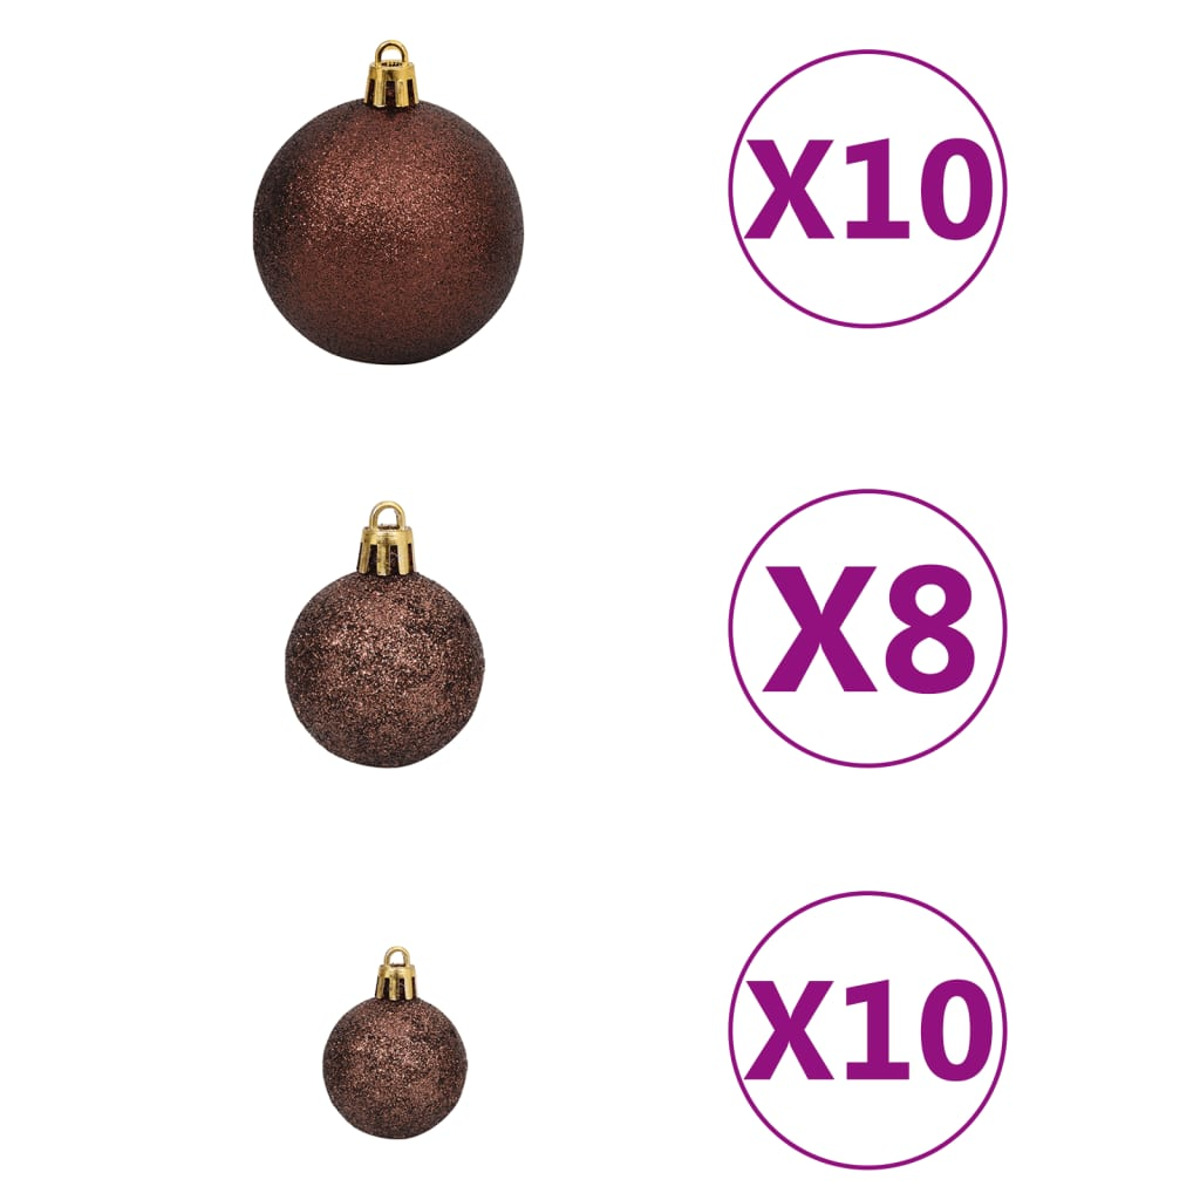 VIDAXL 3077510 Weihnachtsbaum